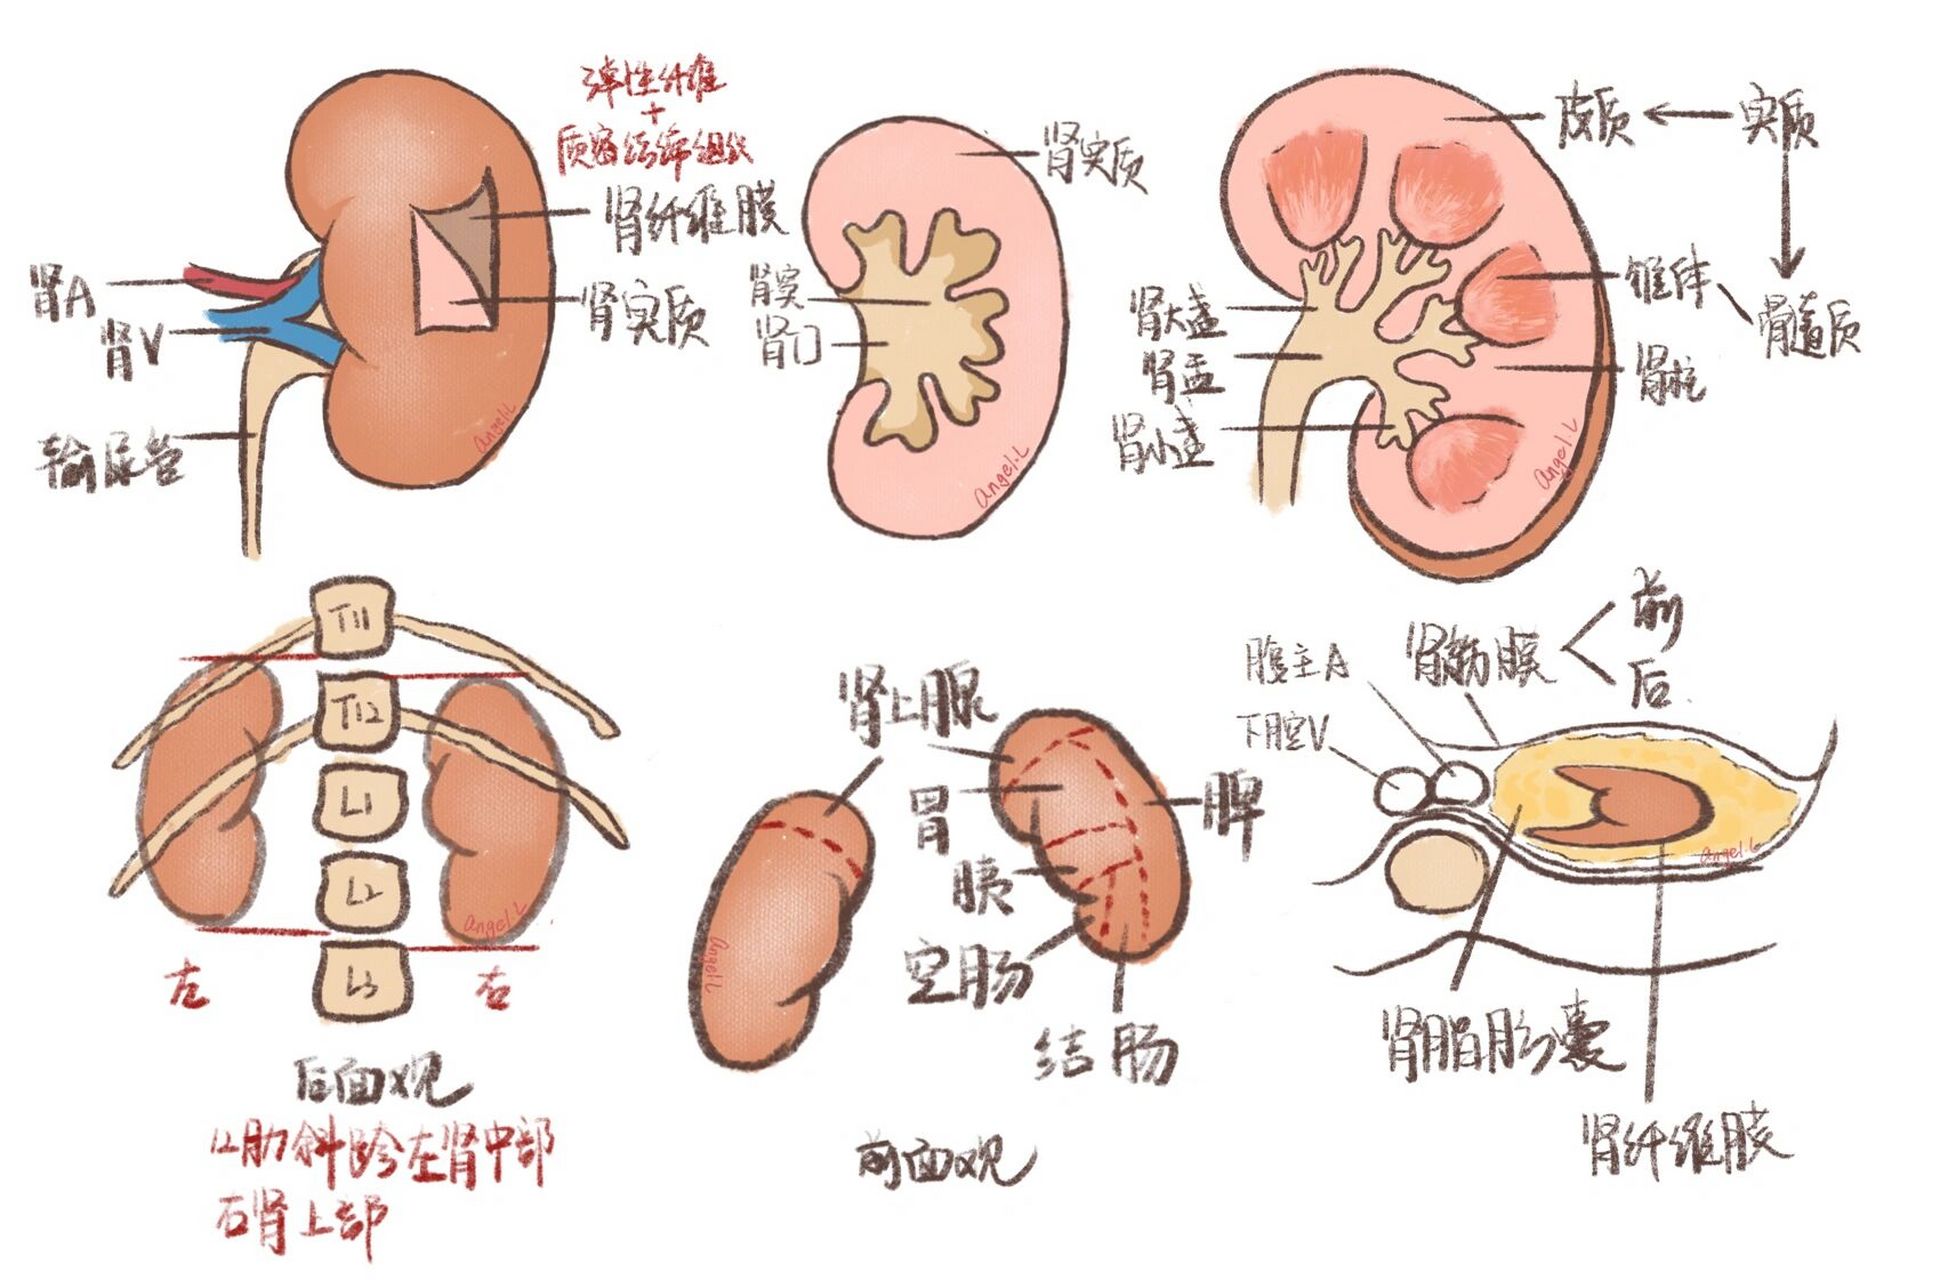 肾脏结构示意图简笔画图片